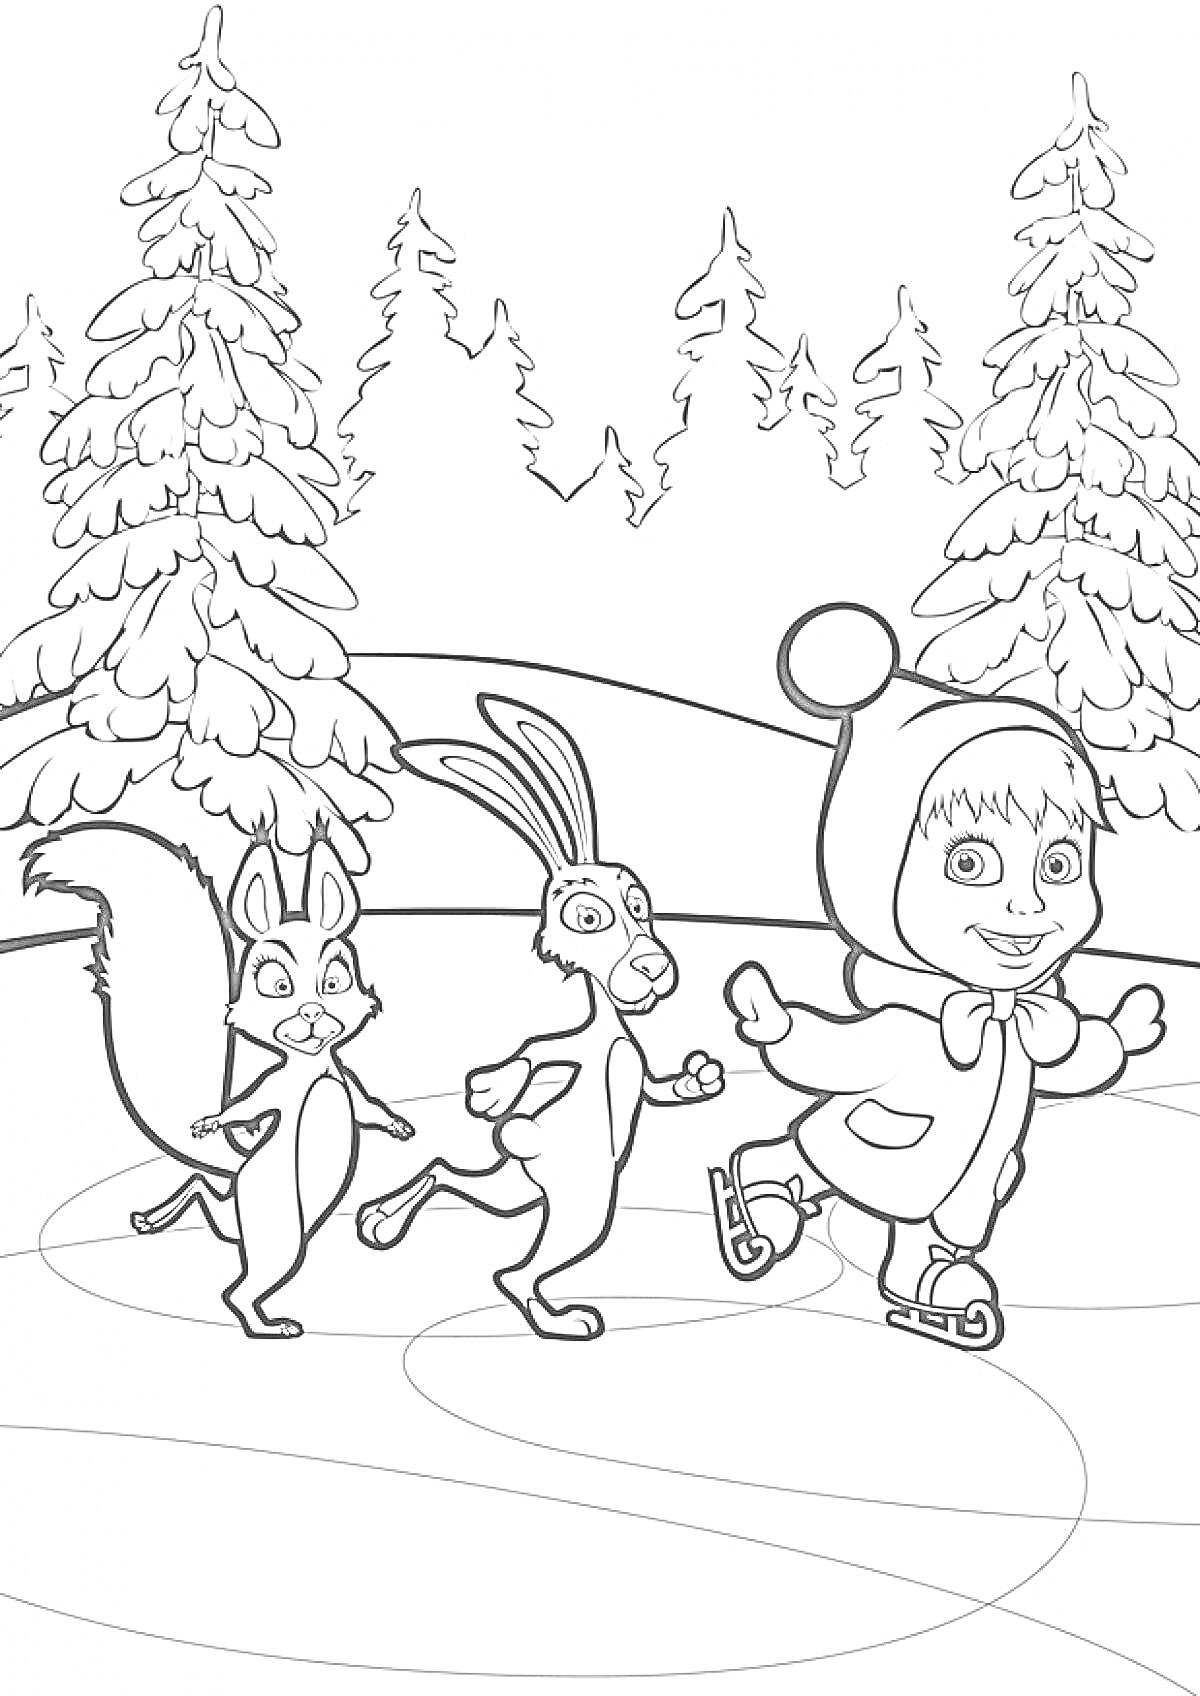 Раскраска Дети и животные на коньках в лесу, ель, белка, заяц, ребенок в шапке